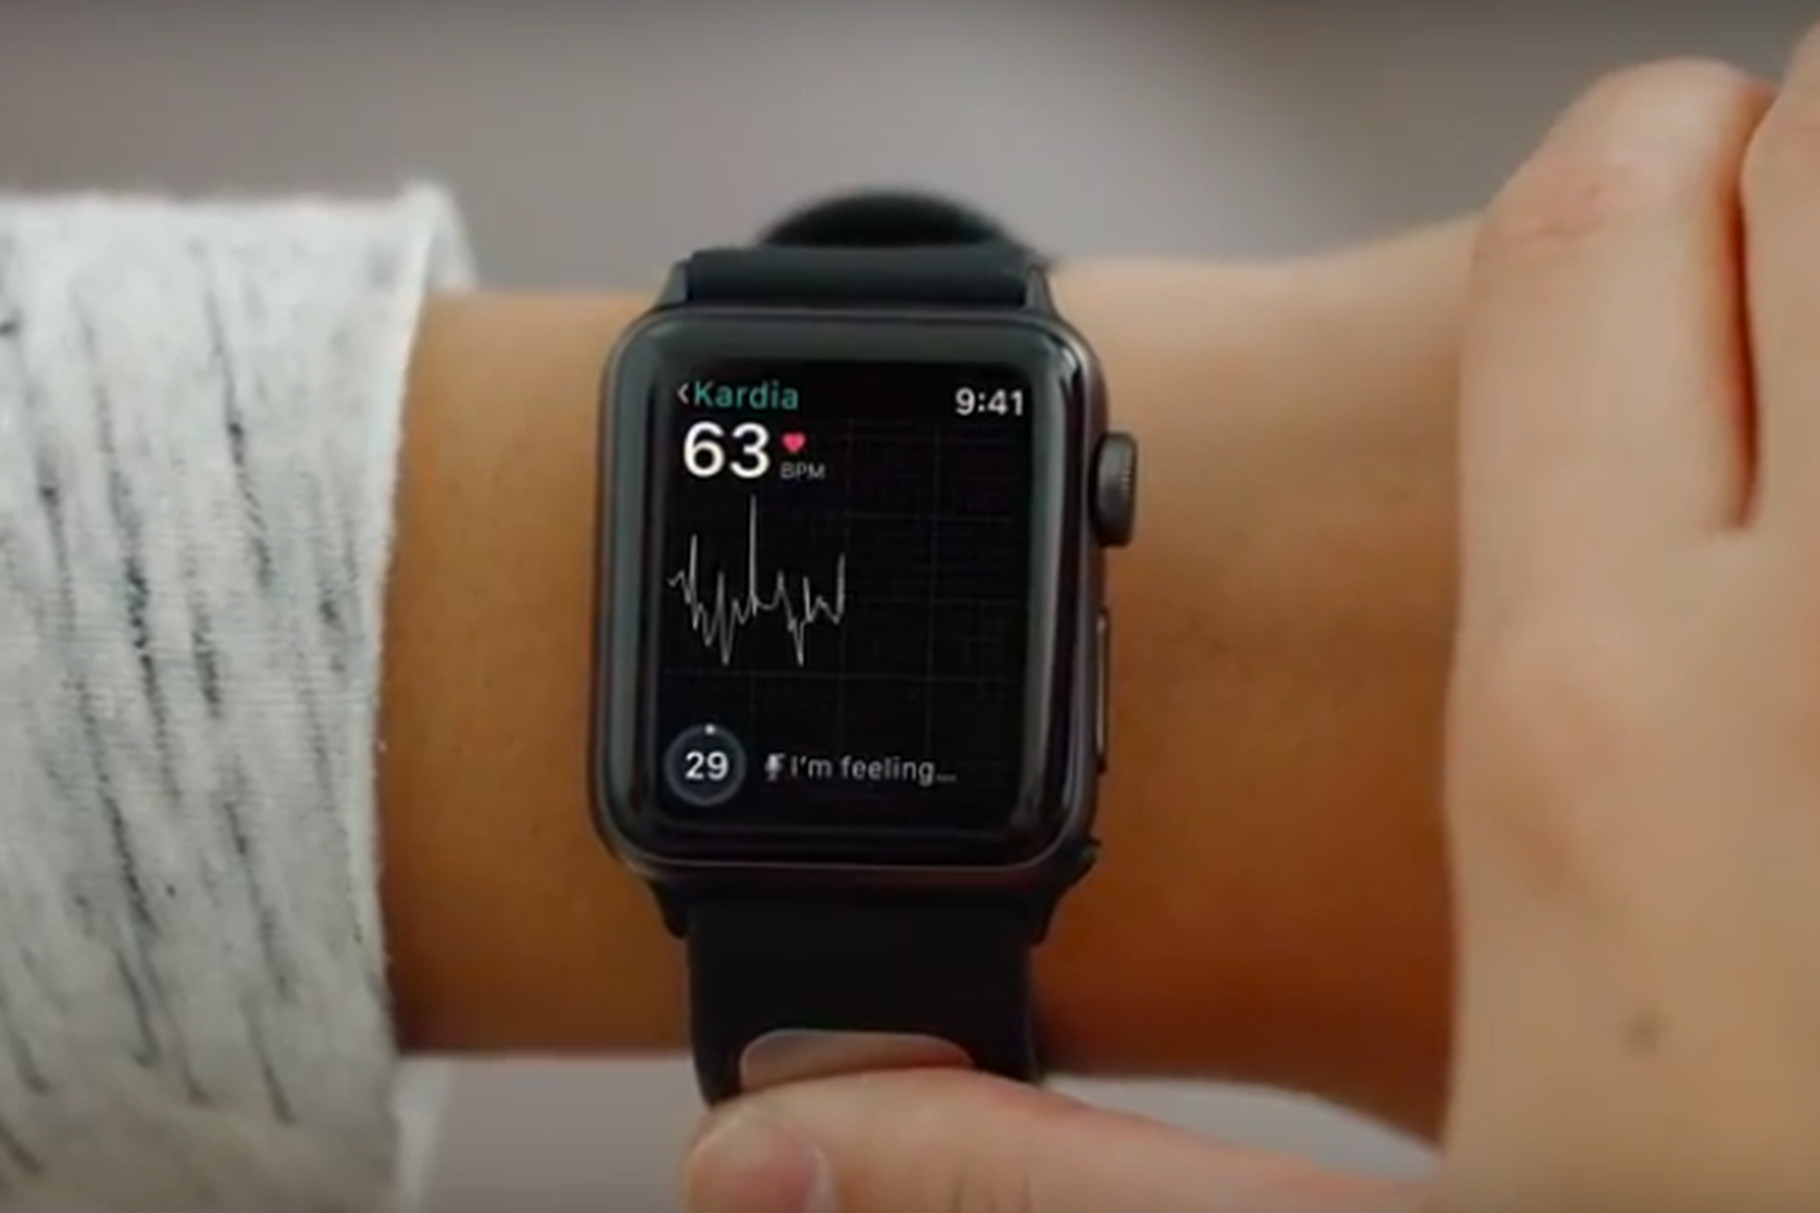 Apple Watchを心電図モニターに変えるバンド「KardiaBand」が米国で販売開始。FDA認証を受けた初めてのApple Watchバンドに